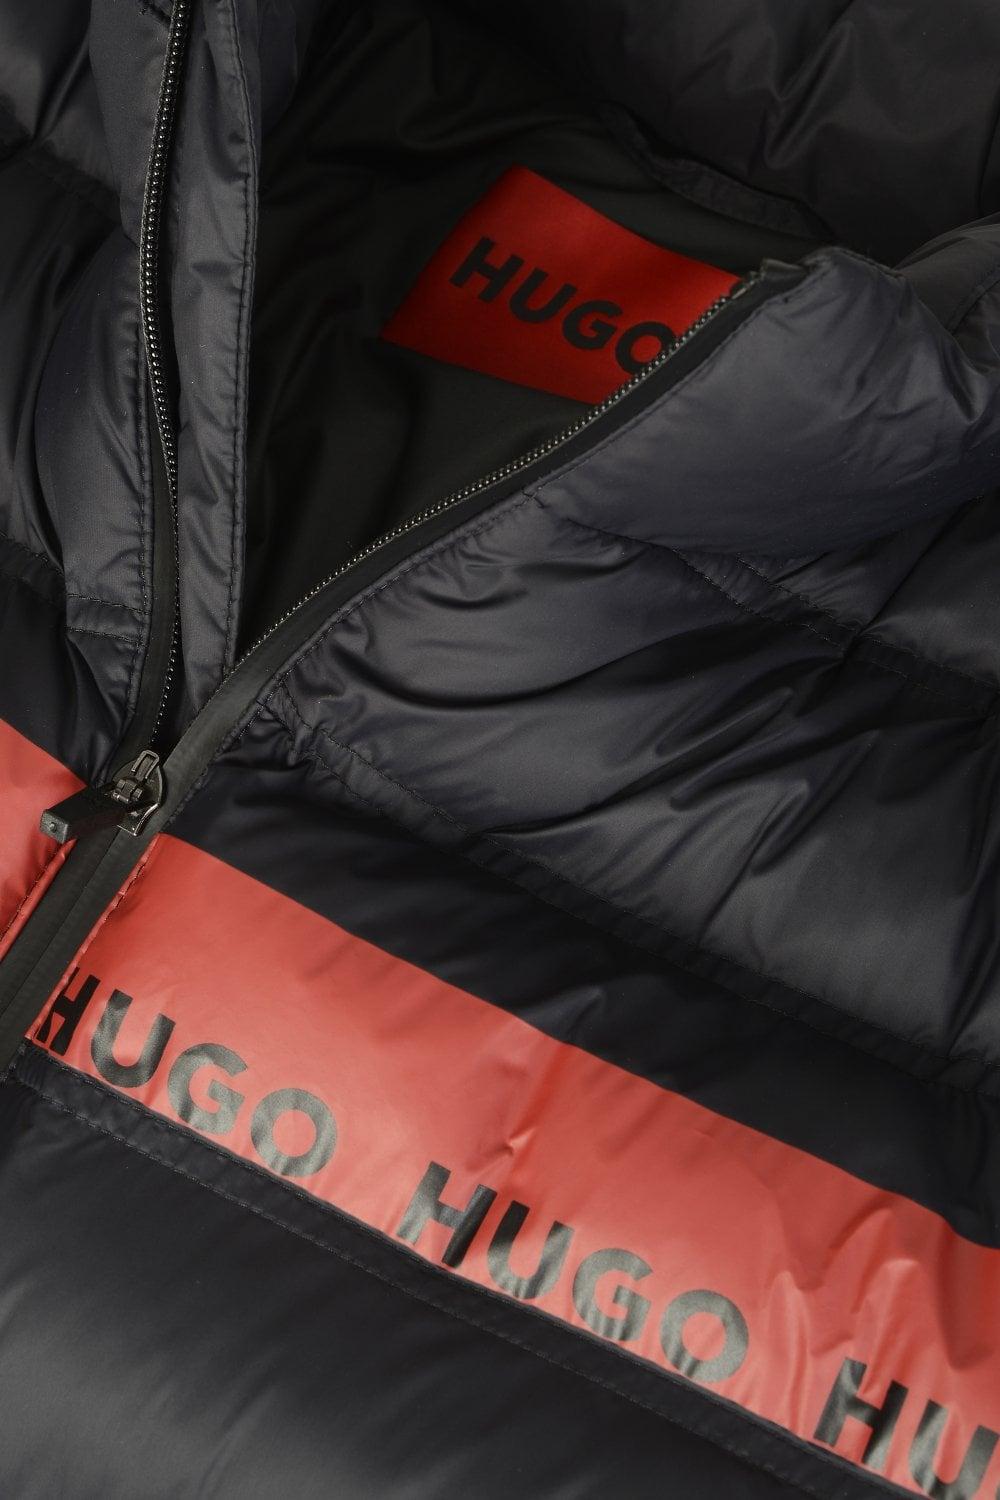 BOSS by HUGO BOSS Balto 211 Jacket in Black for Men | Lyst